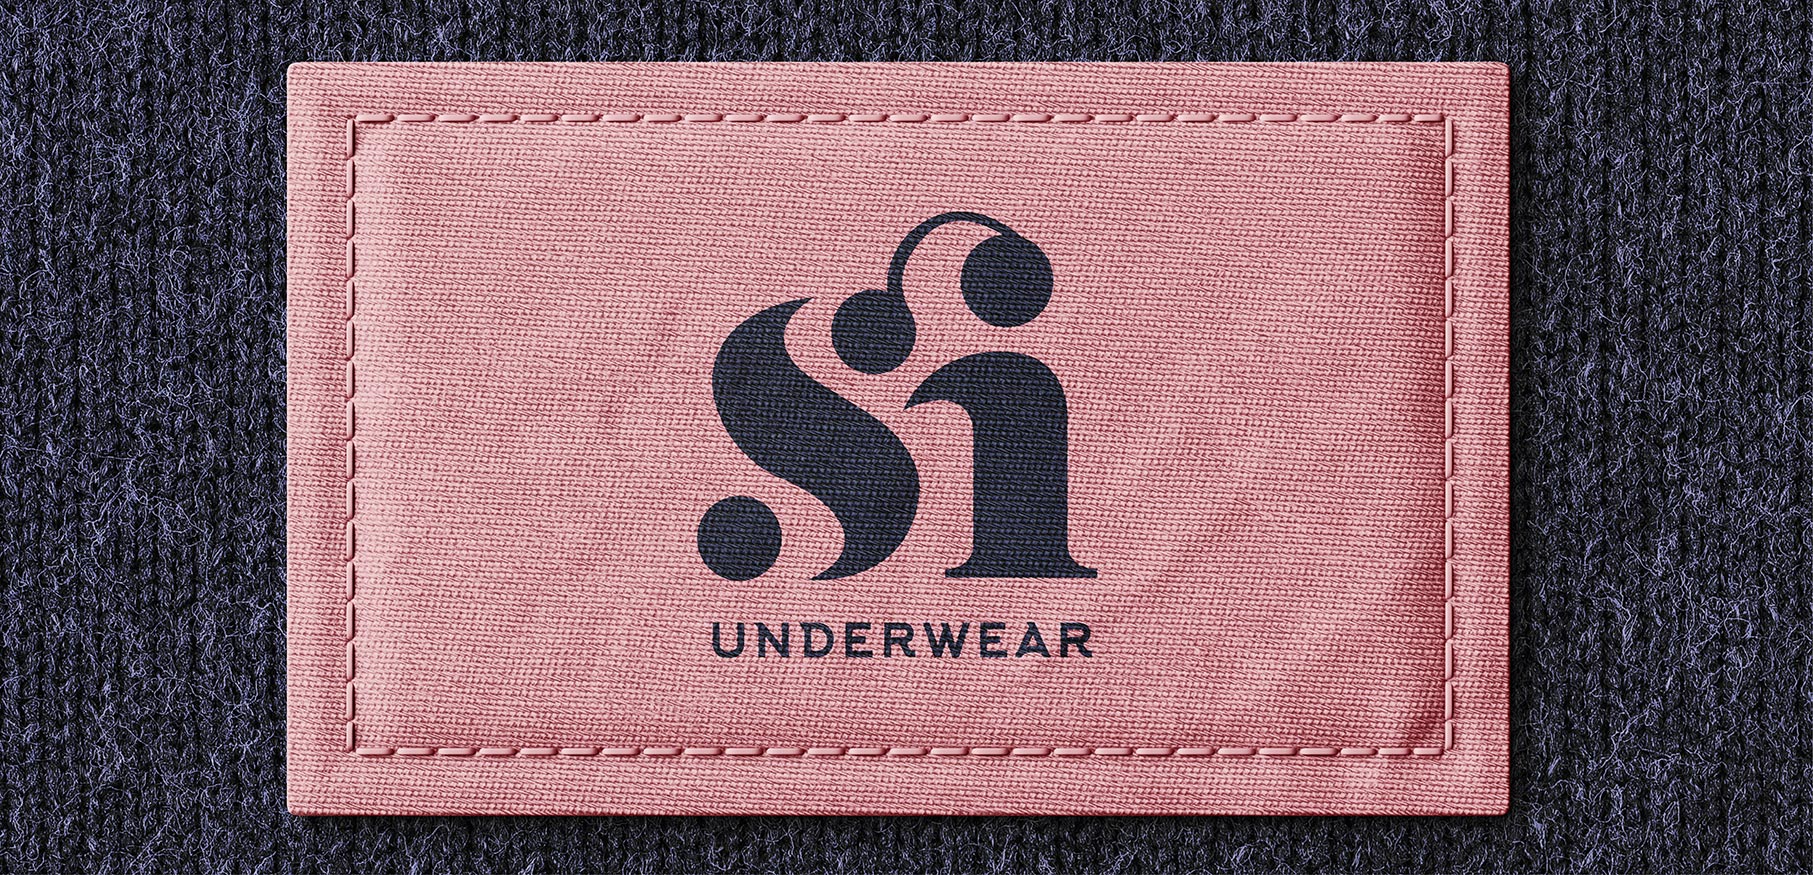 Si Underwear - KONSEPTIZ Advertising Agency in Turkey